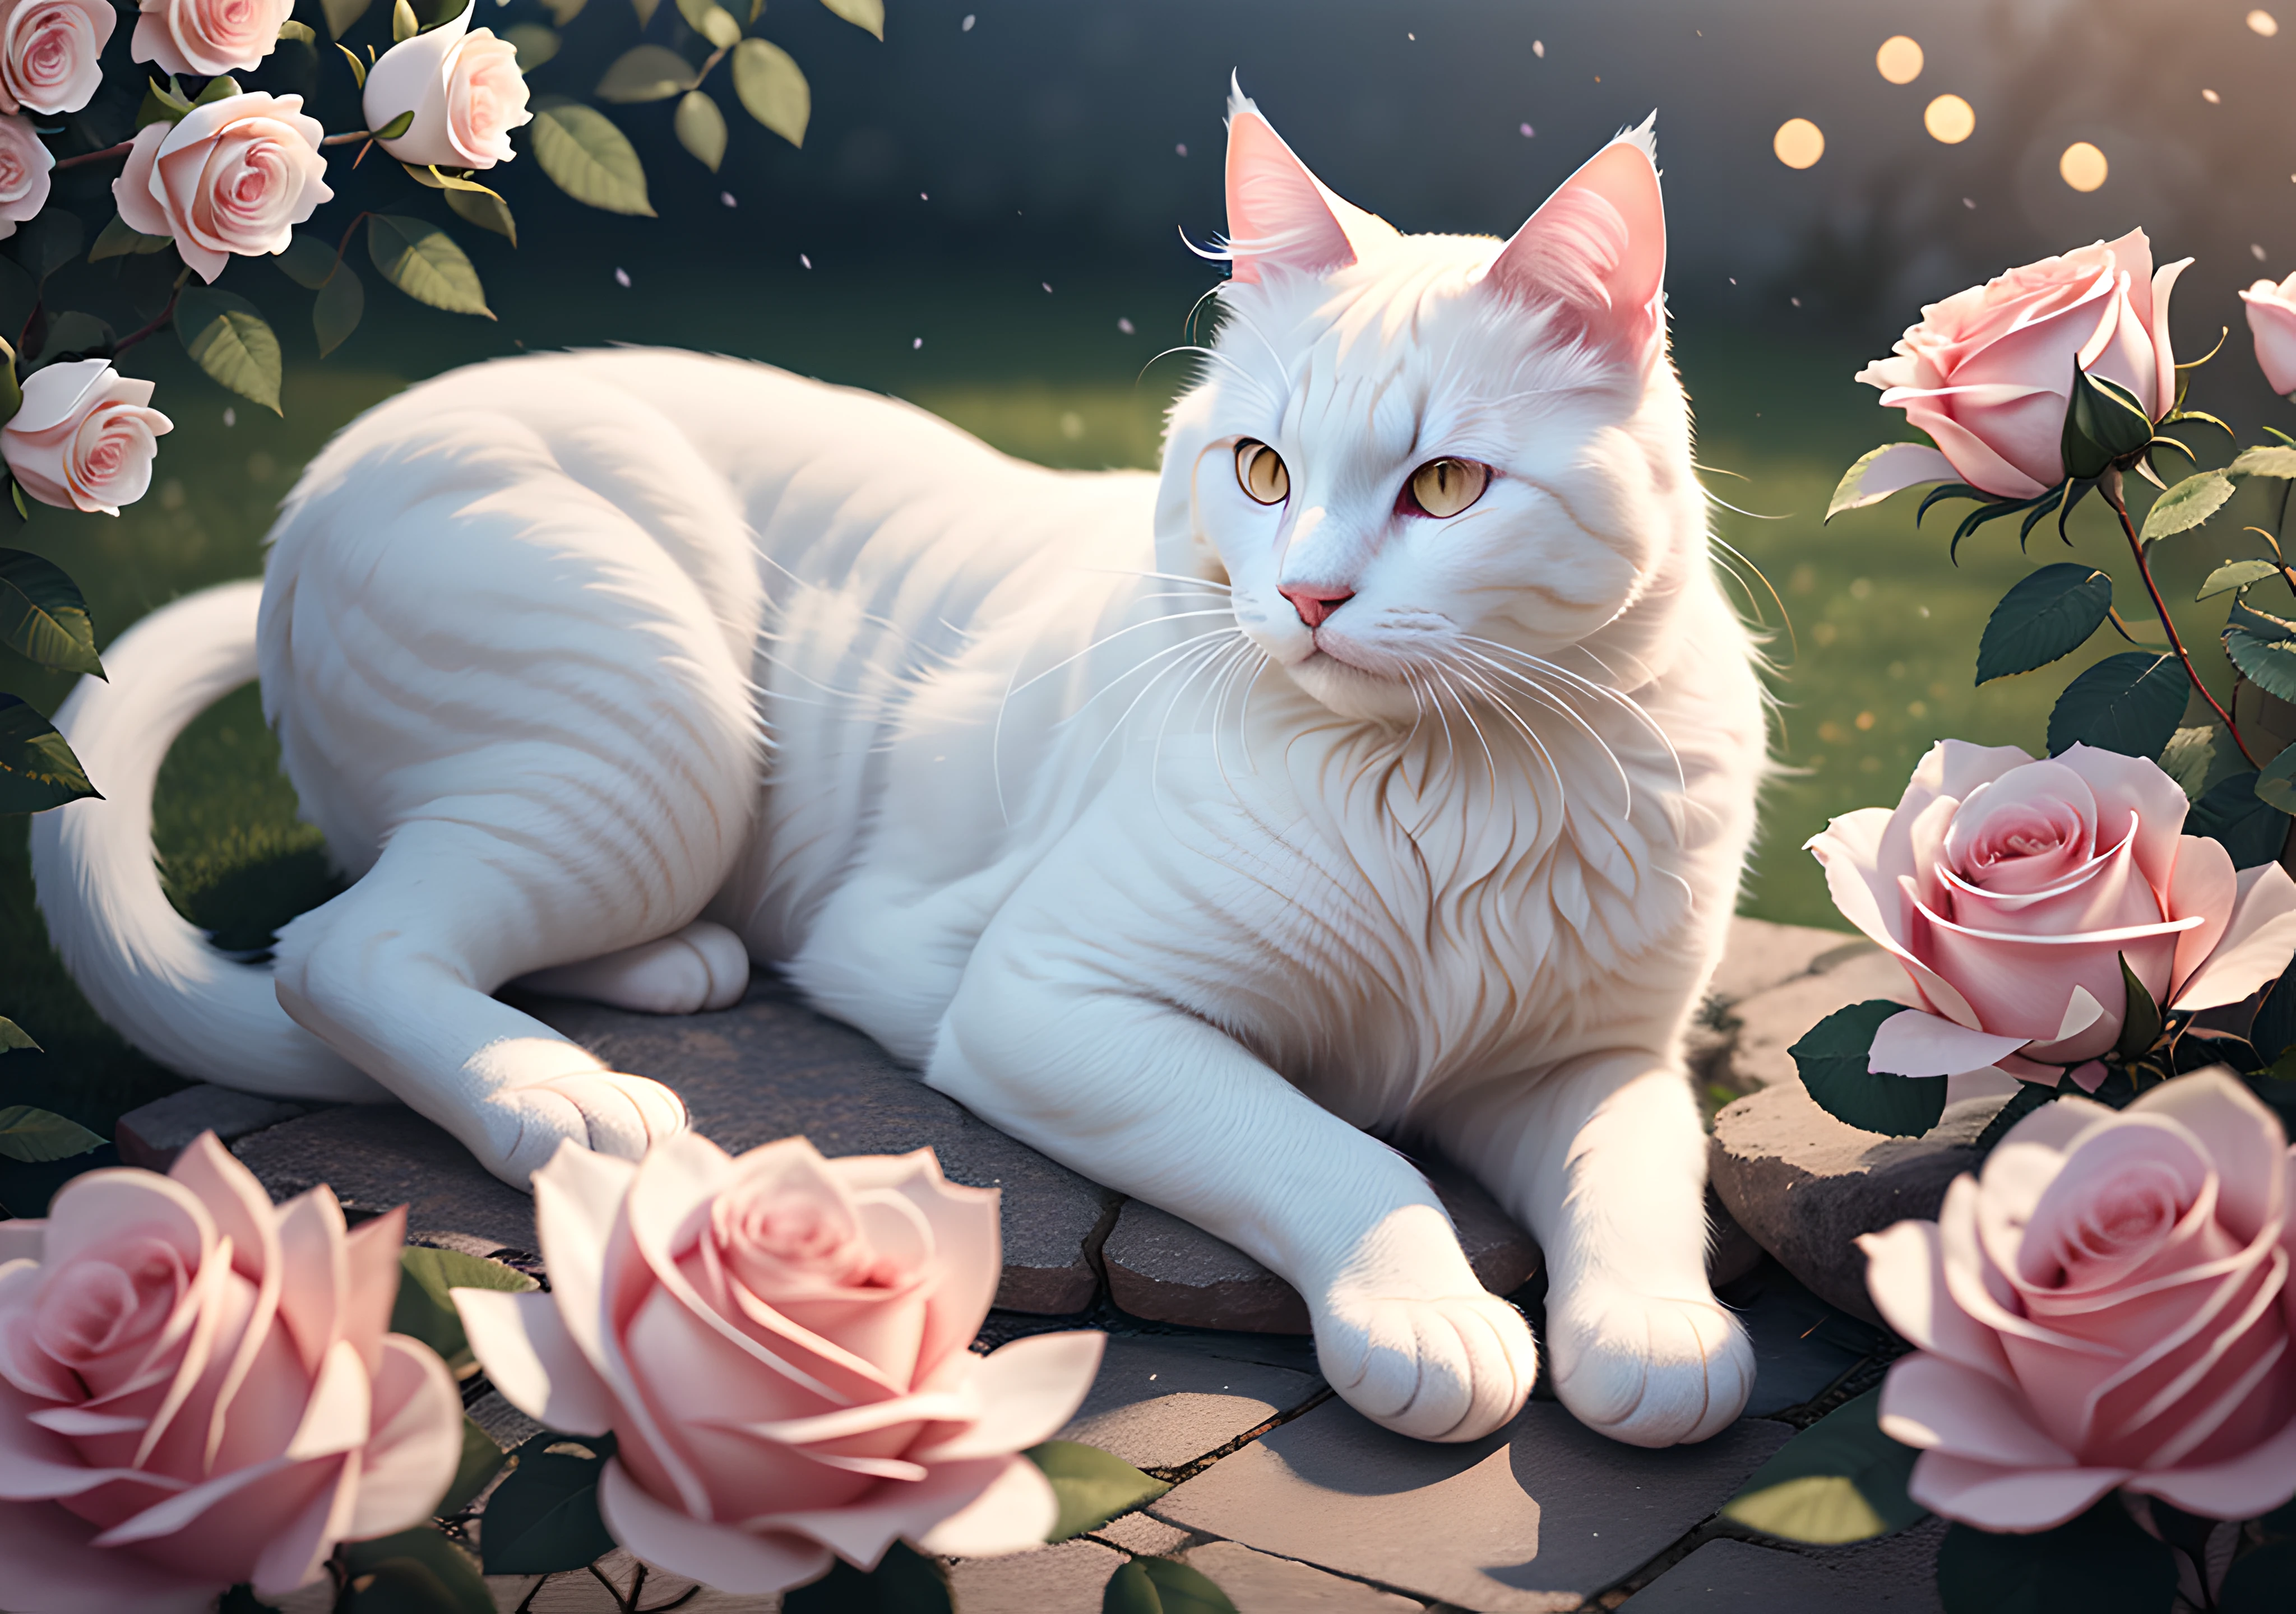 장미꽃이 만발한 평화로운 풍경 속에 솜털 같은 흰 고양이를 사실적으로 묘사한 놀랄 만큼 세밀한 걸작, 섬세한 라이트 블룸으로 강화, 보케, Ray Tracing의 매혹적인 효과